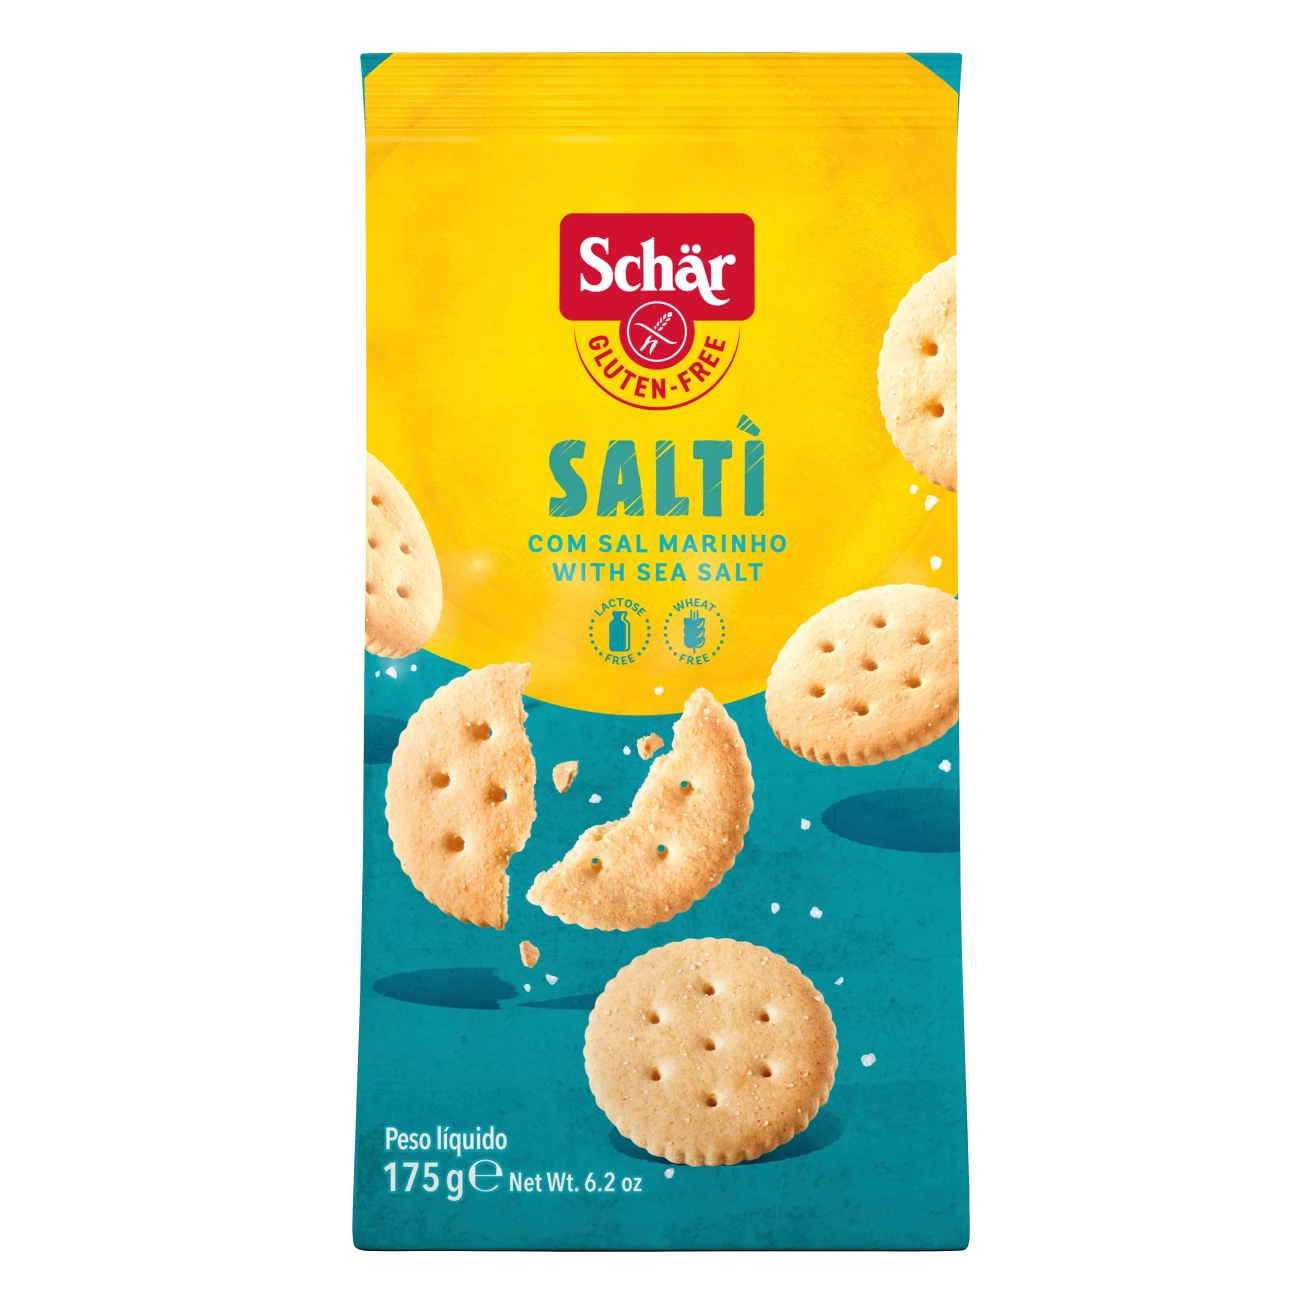 Biscuiti sarati fara gluten Salti, 175 g, Schar